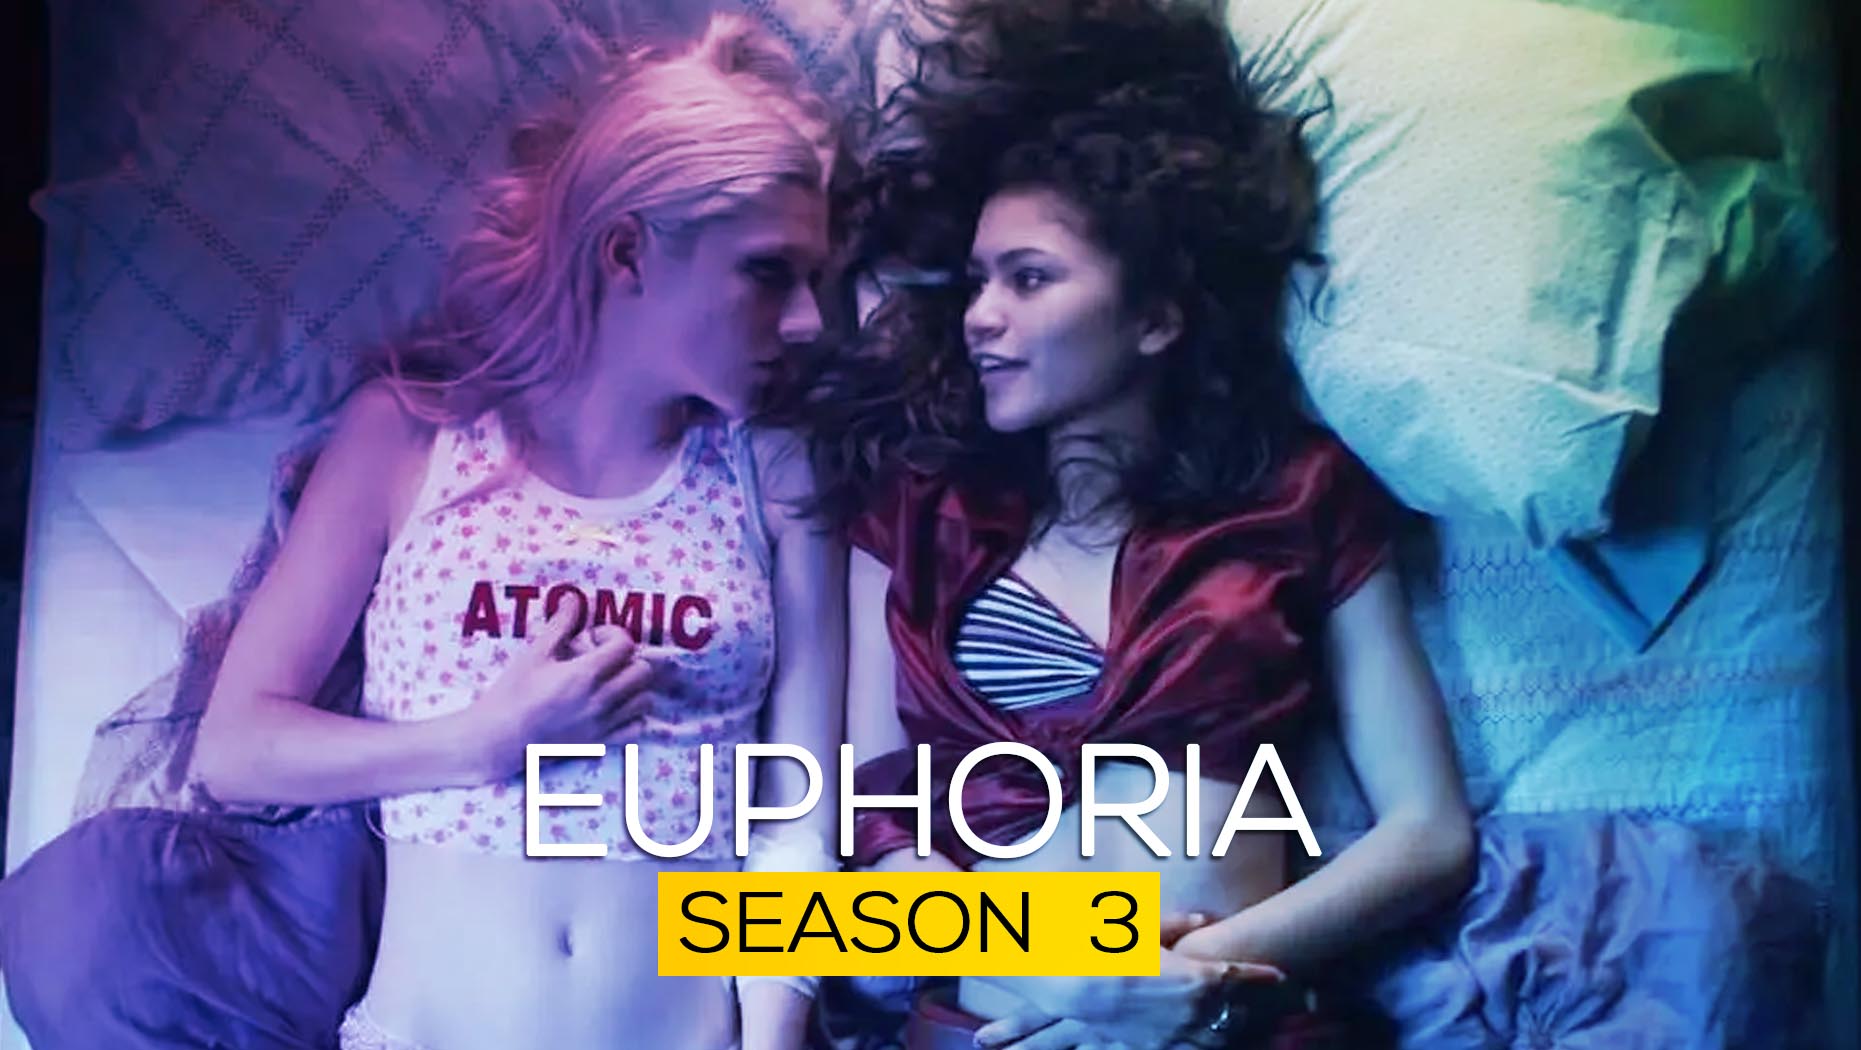 Euphoria Season 3 Details